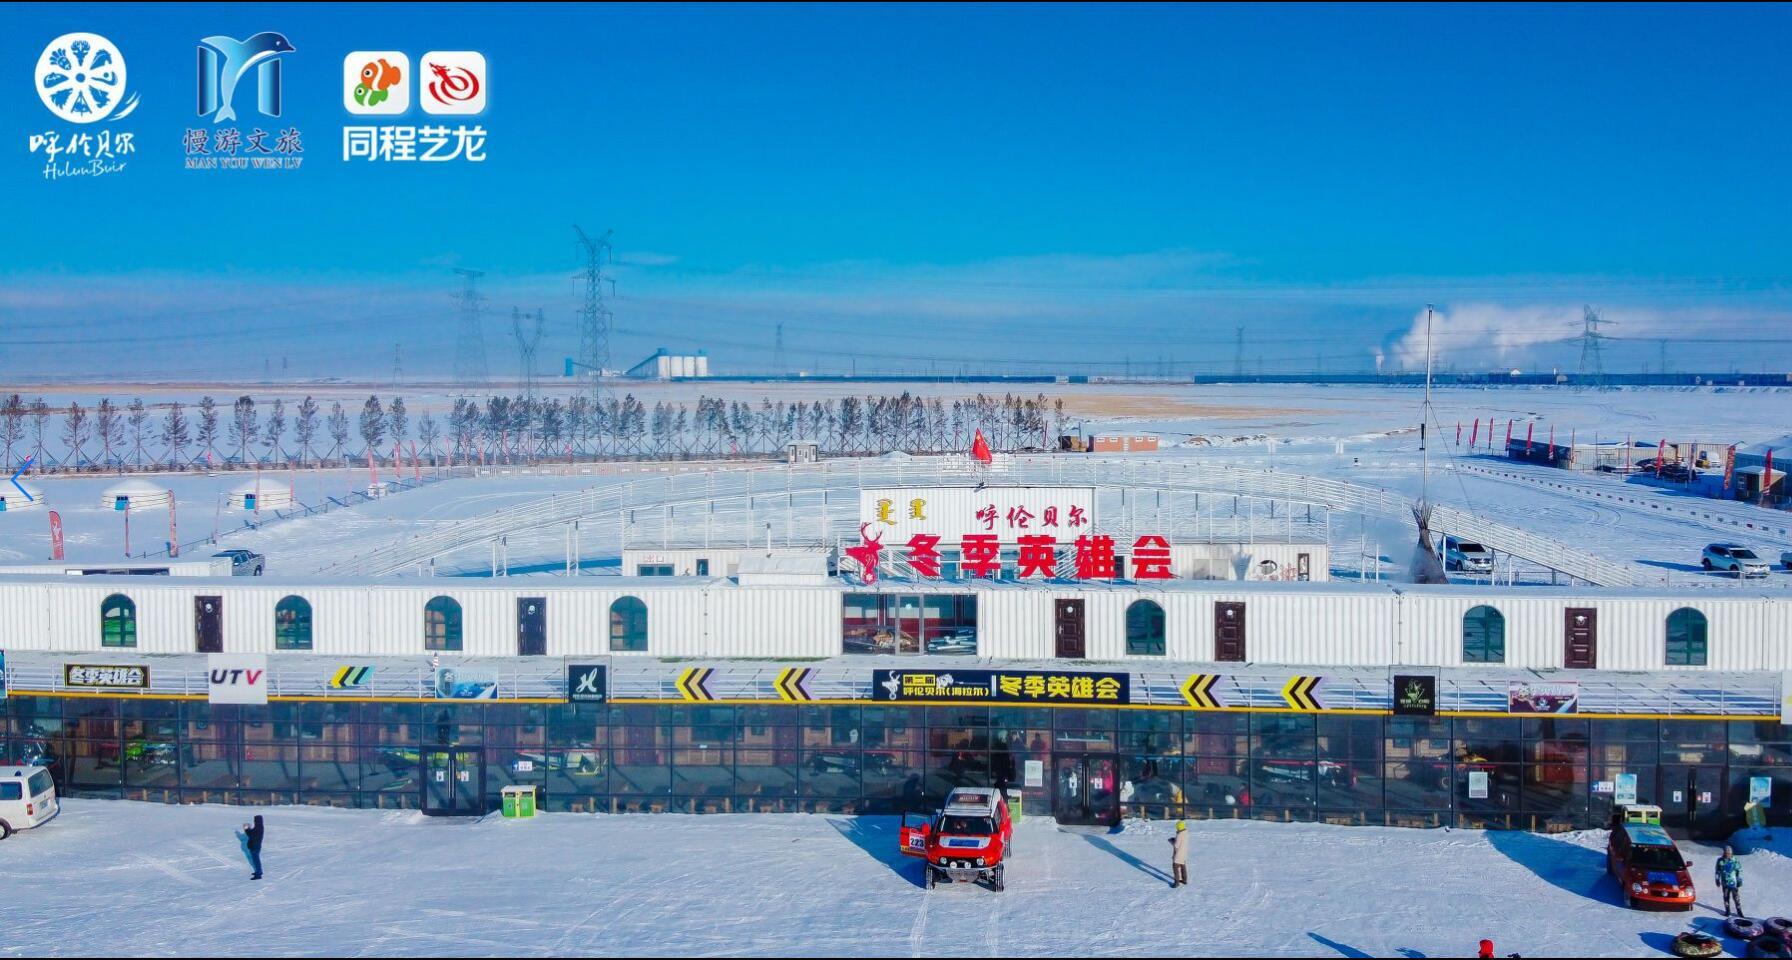 “相约呼伦贝尔、奇遇冰雪世界”同程旅游验客中国活动